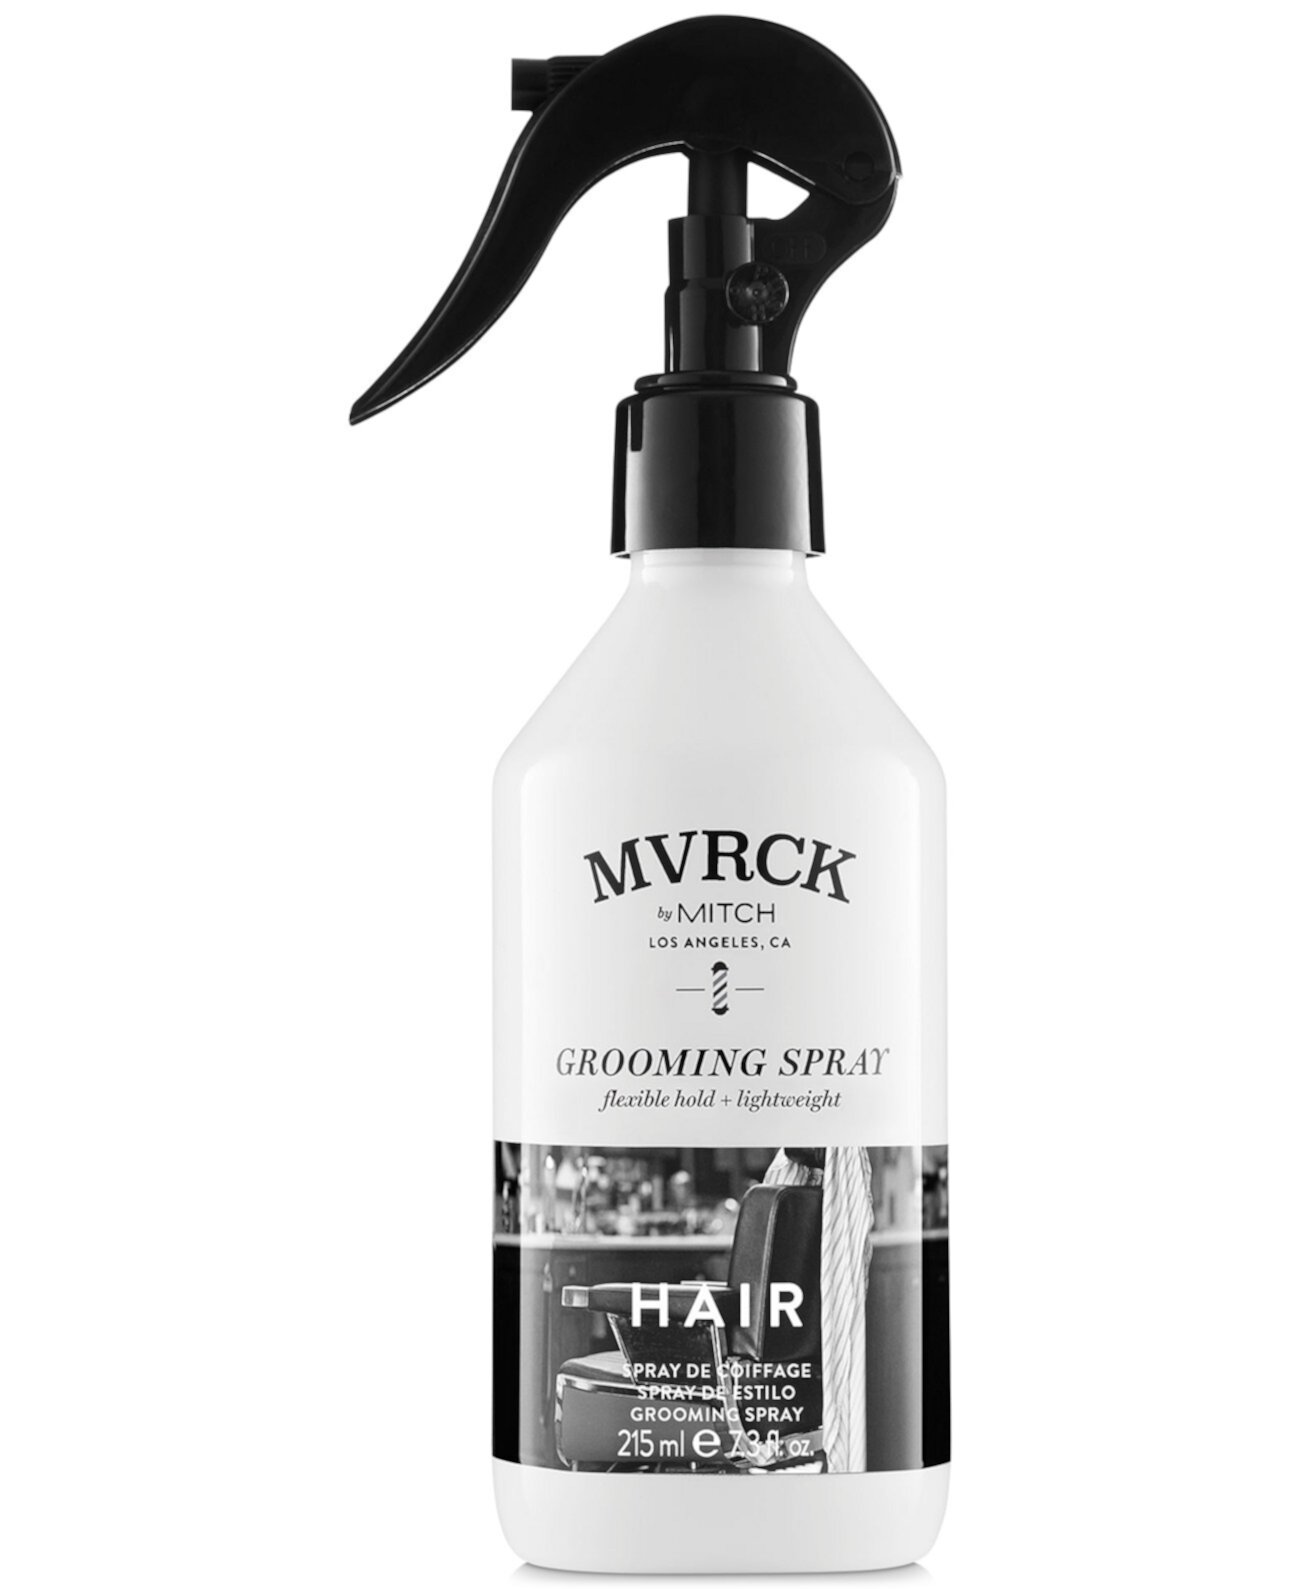 Спрей для ухода за волосами MVRCK, 7,3 унции, от PUREBEAUTY Salon & Spa PAUL MITCHELL